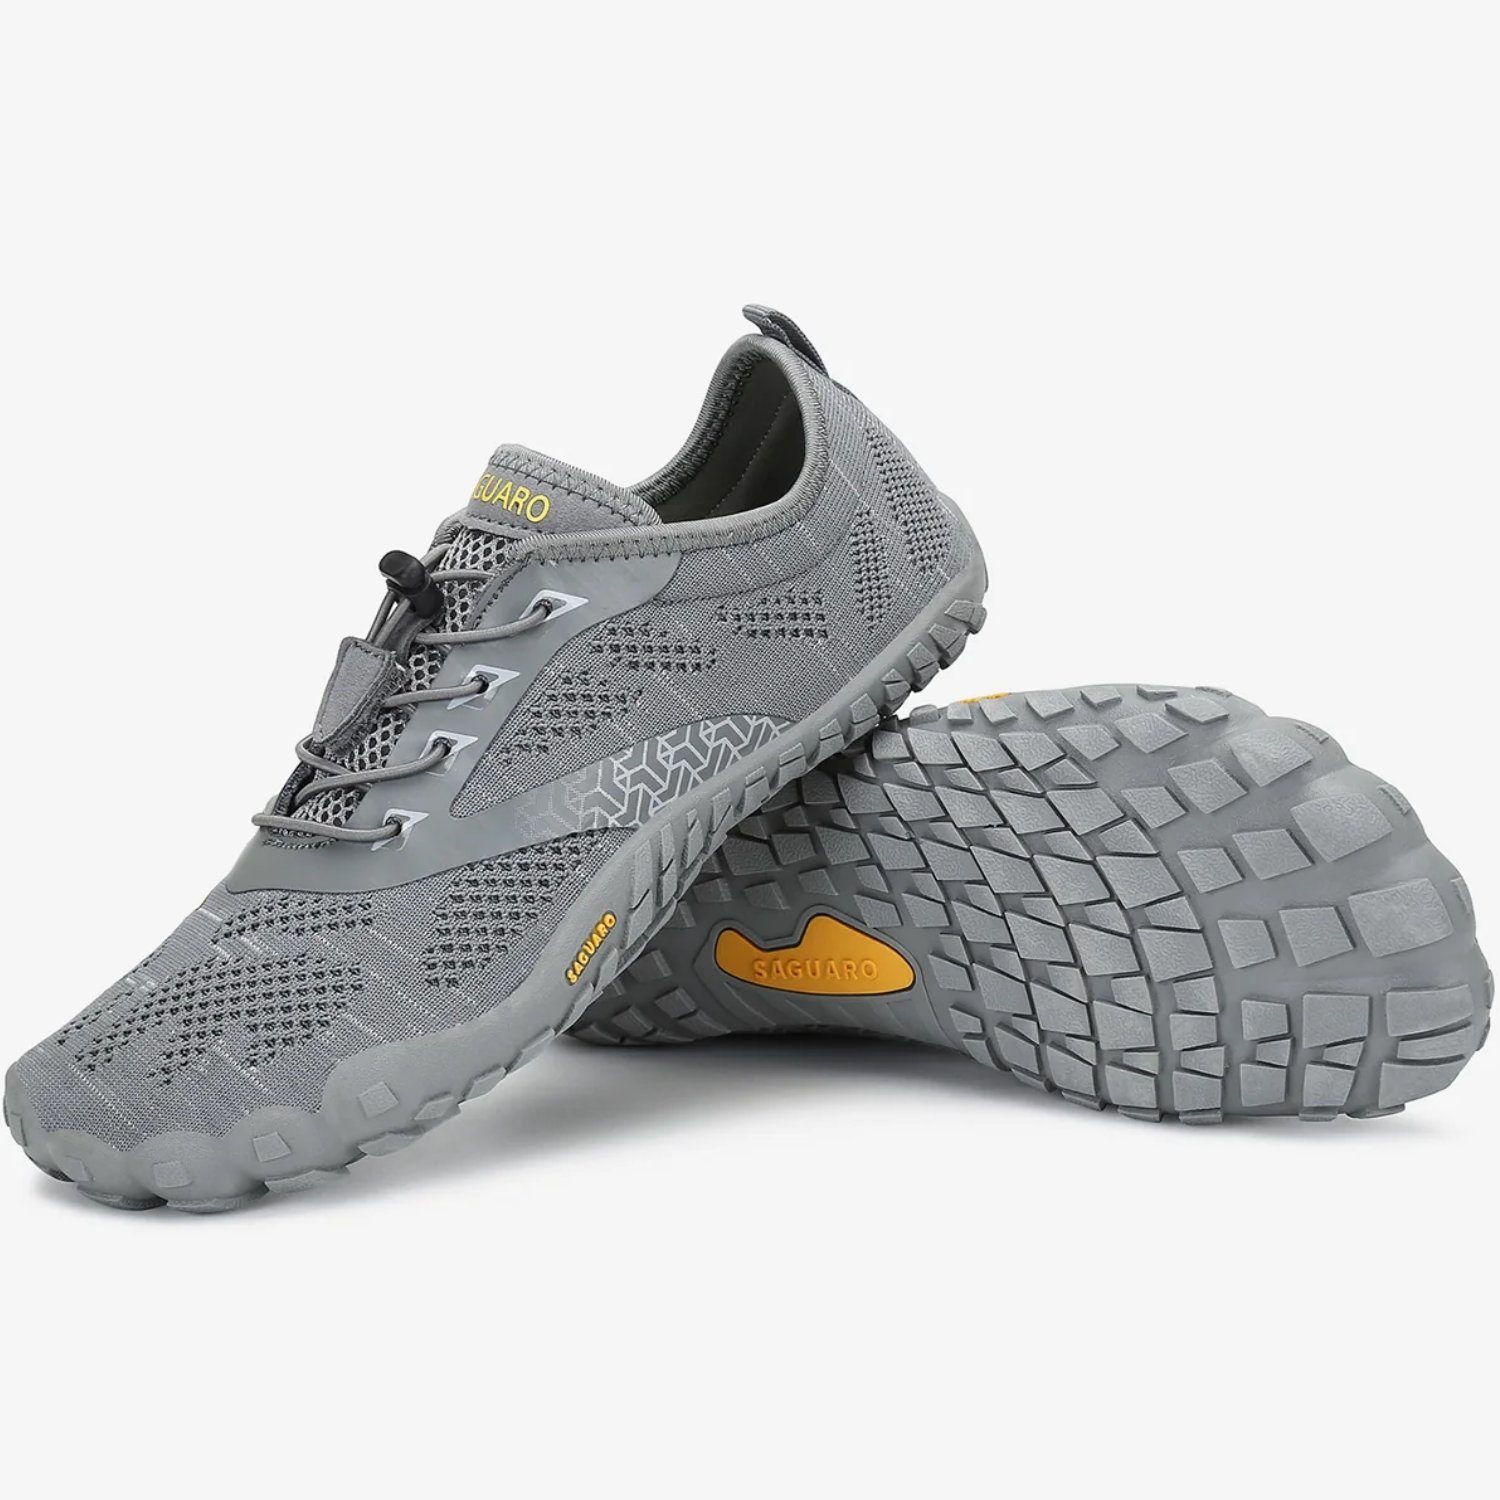 SAGUARO Barfußschuh (bequem, leicht, atmungsaktiv, rutschfest) Minimalschuhe Laufschuhe Sport-Schuhe Jogging Sneaker Trail-Running Grau 052